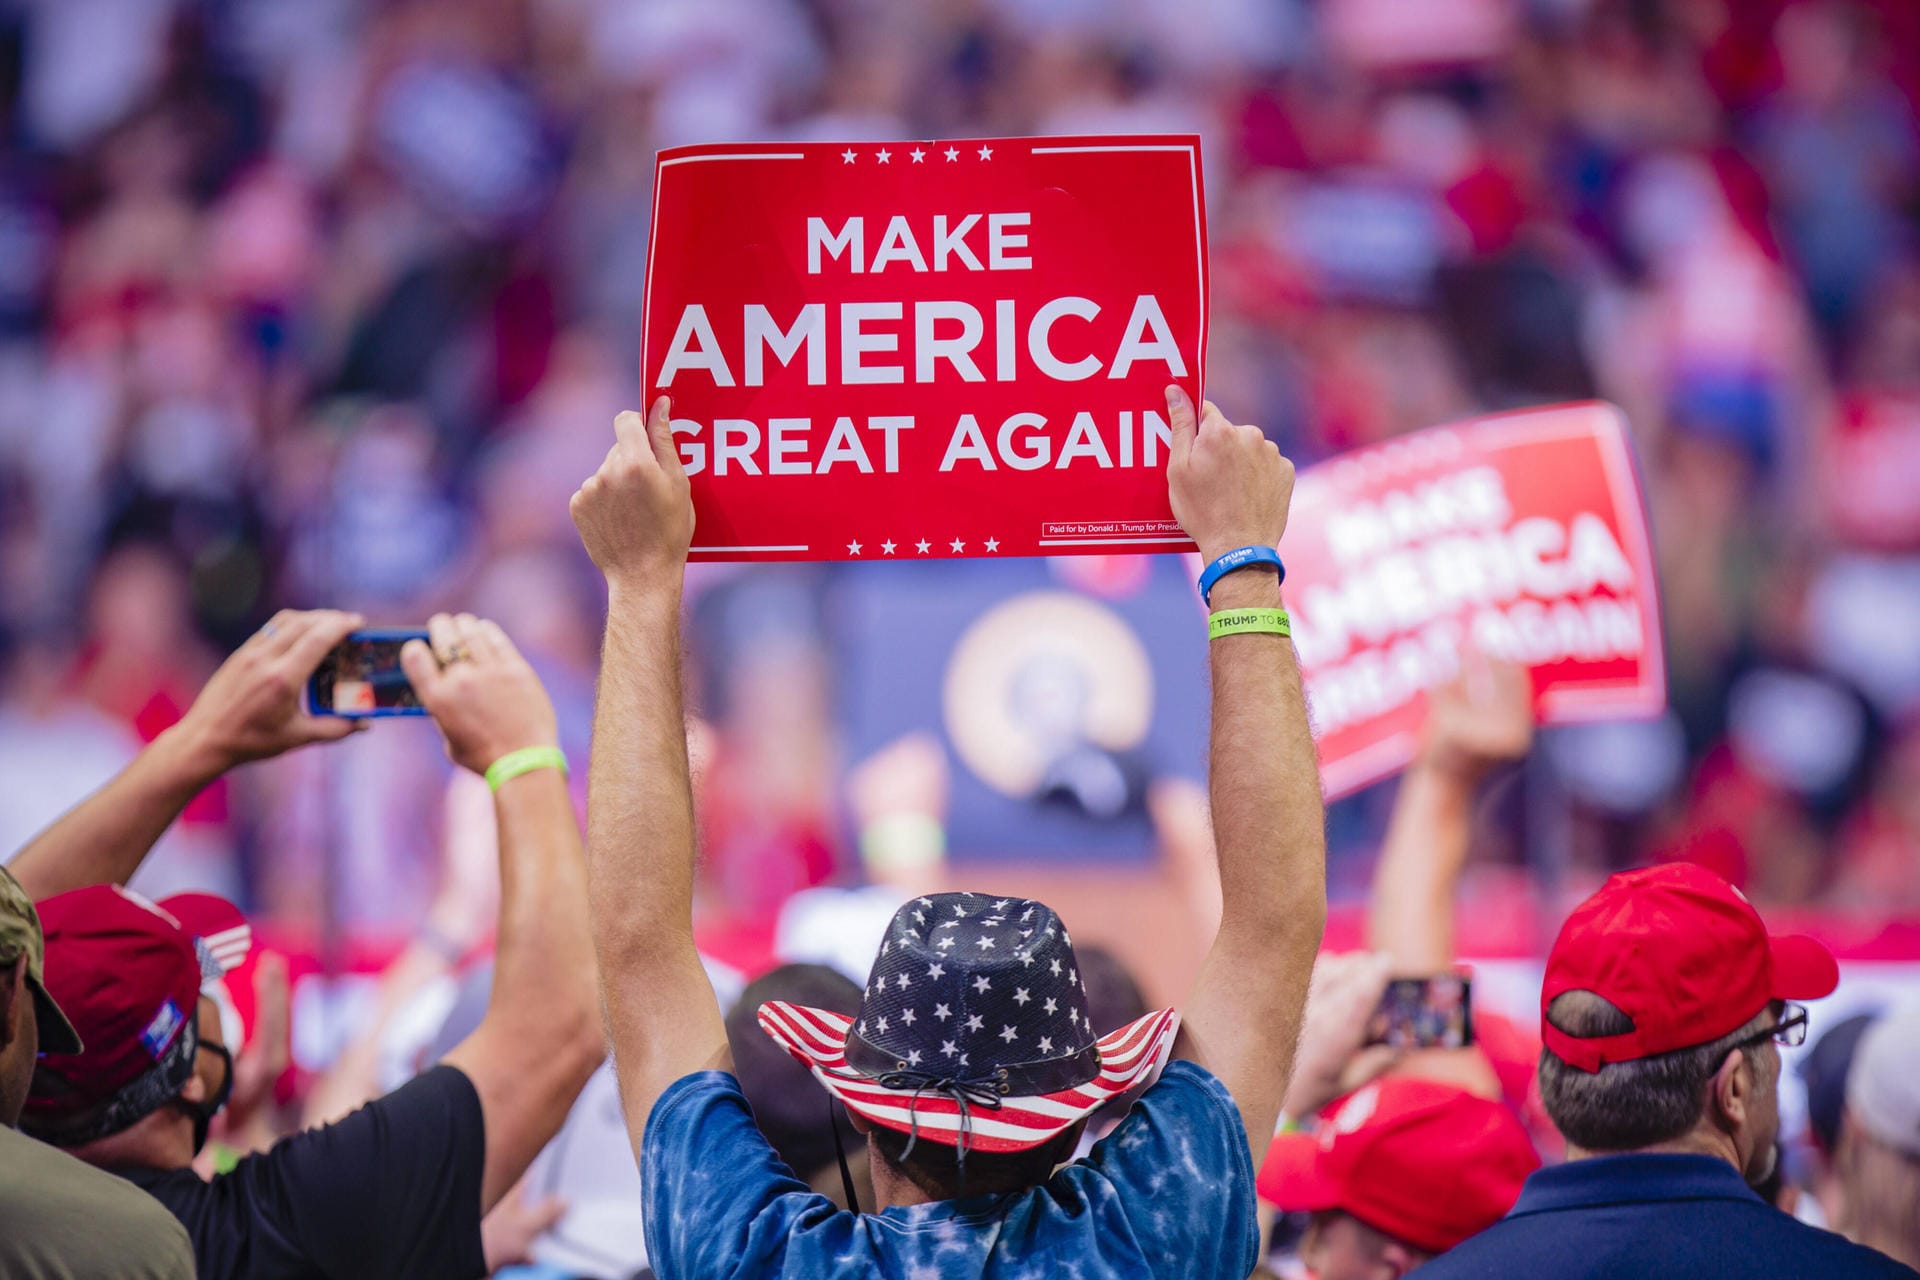 "Make America great again" war schon 2016 Trumps Wahlkampfspruch.